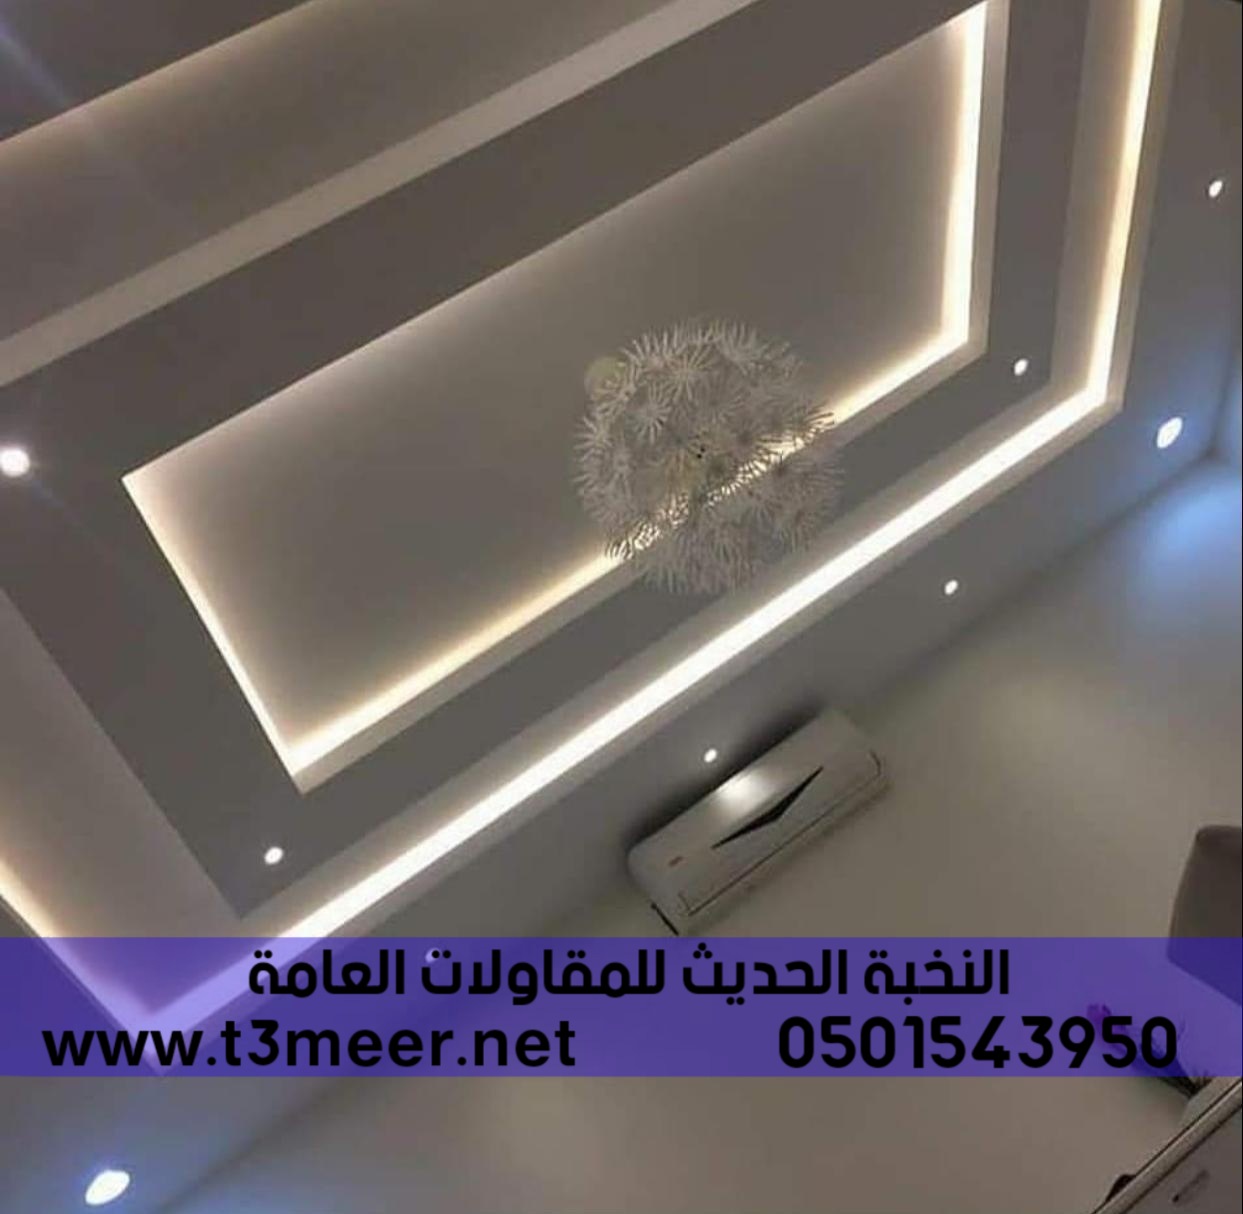 بناء عظم بالمواد او بدون في الرياض , 0501543950 P_24317fx1v2